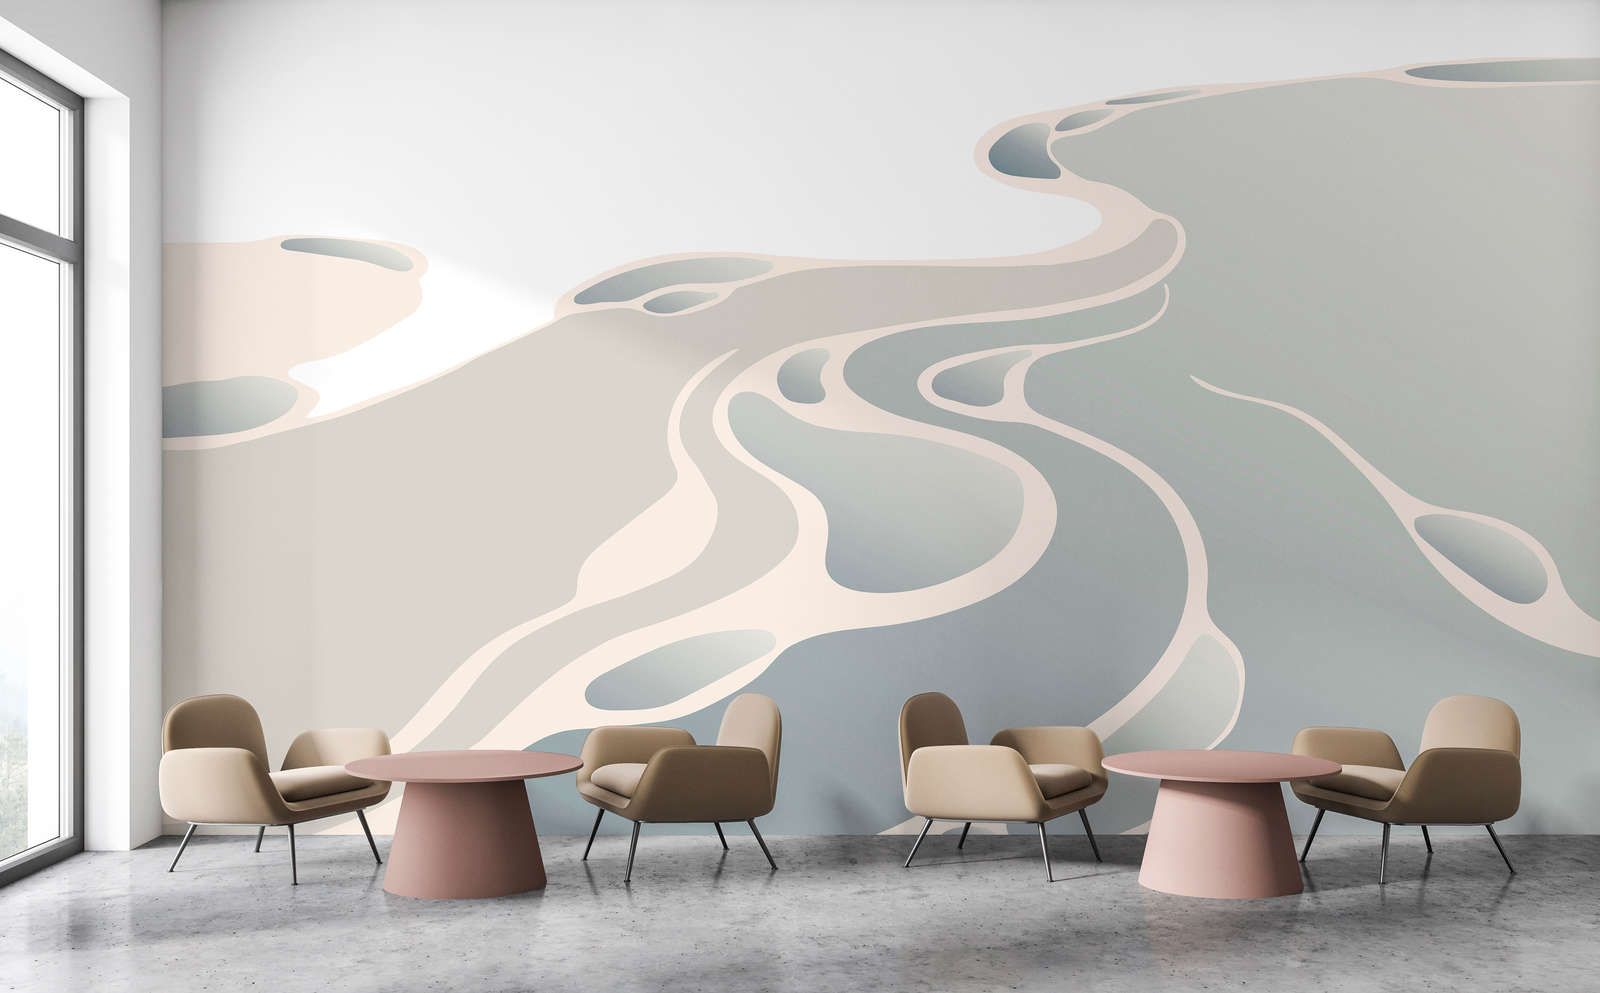             Digital behang »delta« - Abstract woestijnlandschap - Soepele, licht parelmoerachtige vliesstof
        